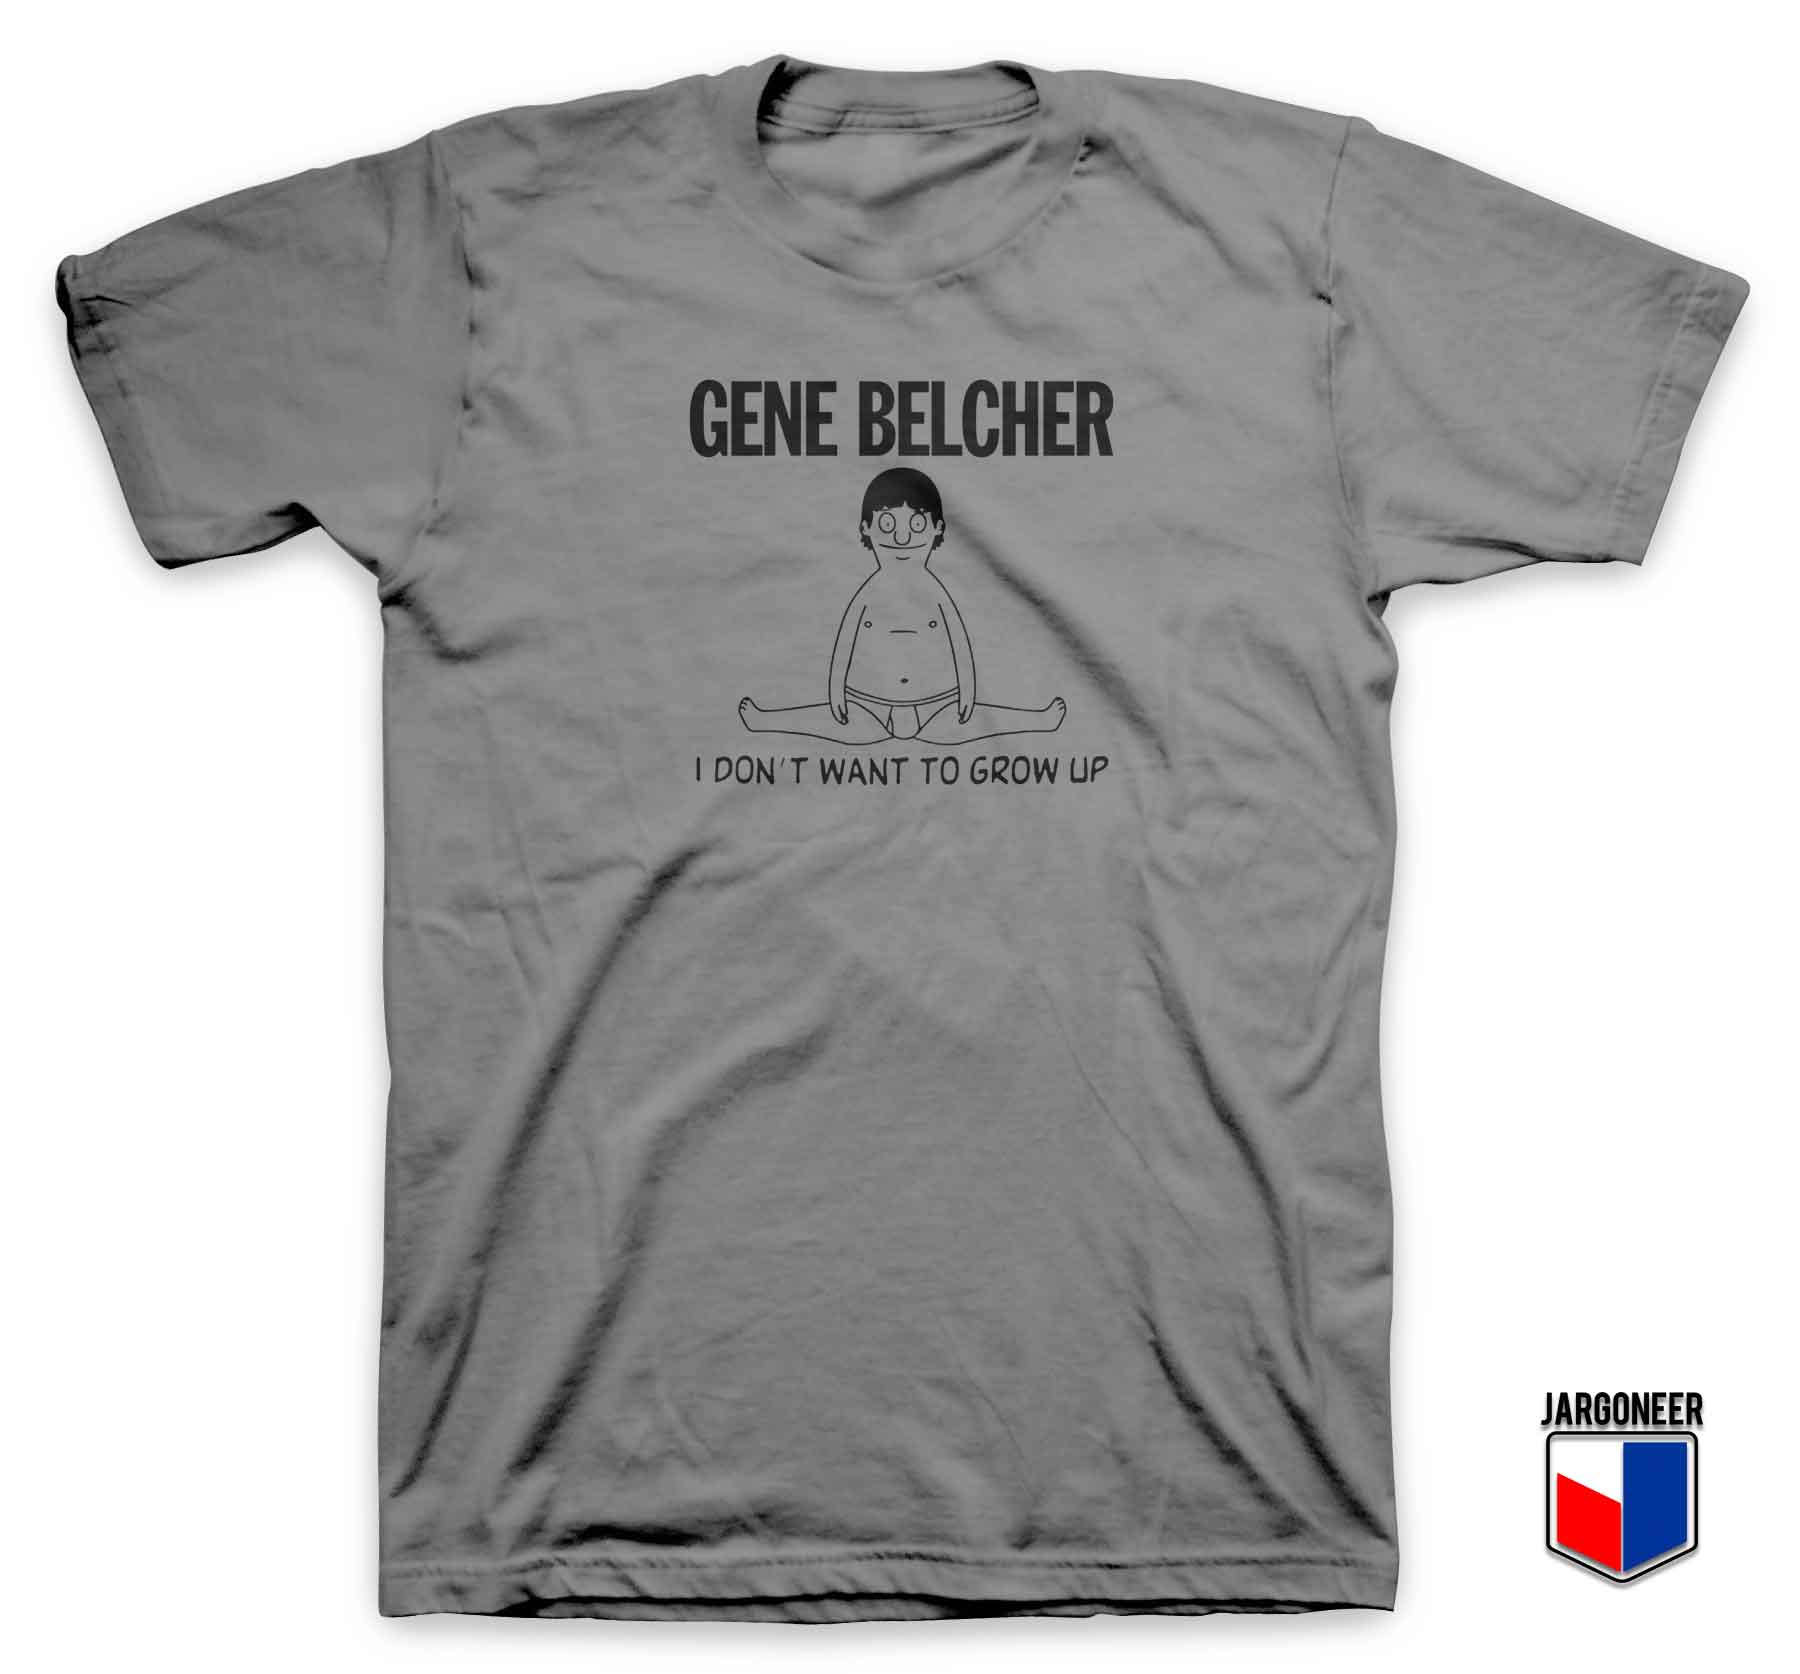 Gene Belcher I Dont Drow Up - Shop Unique Graphic Cool Shirt Designs